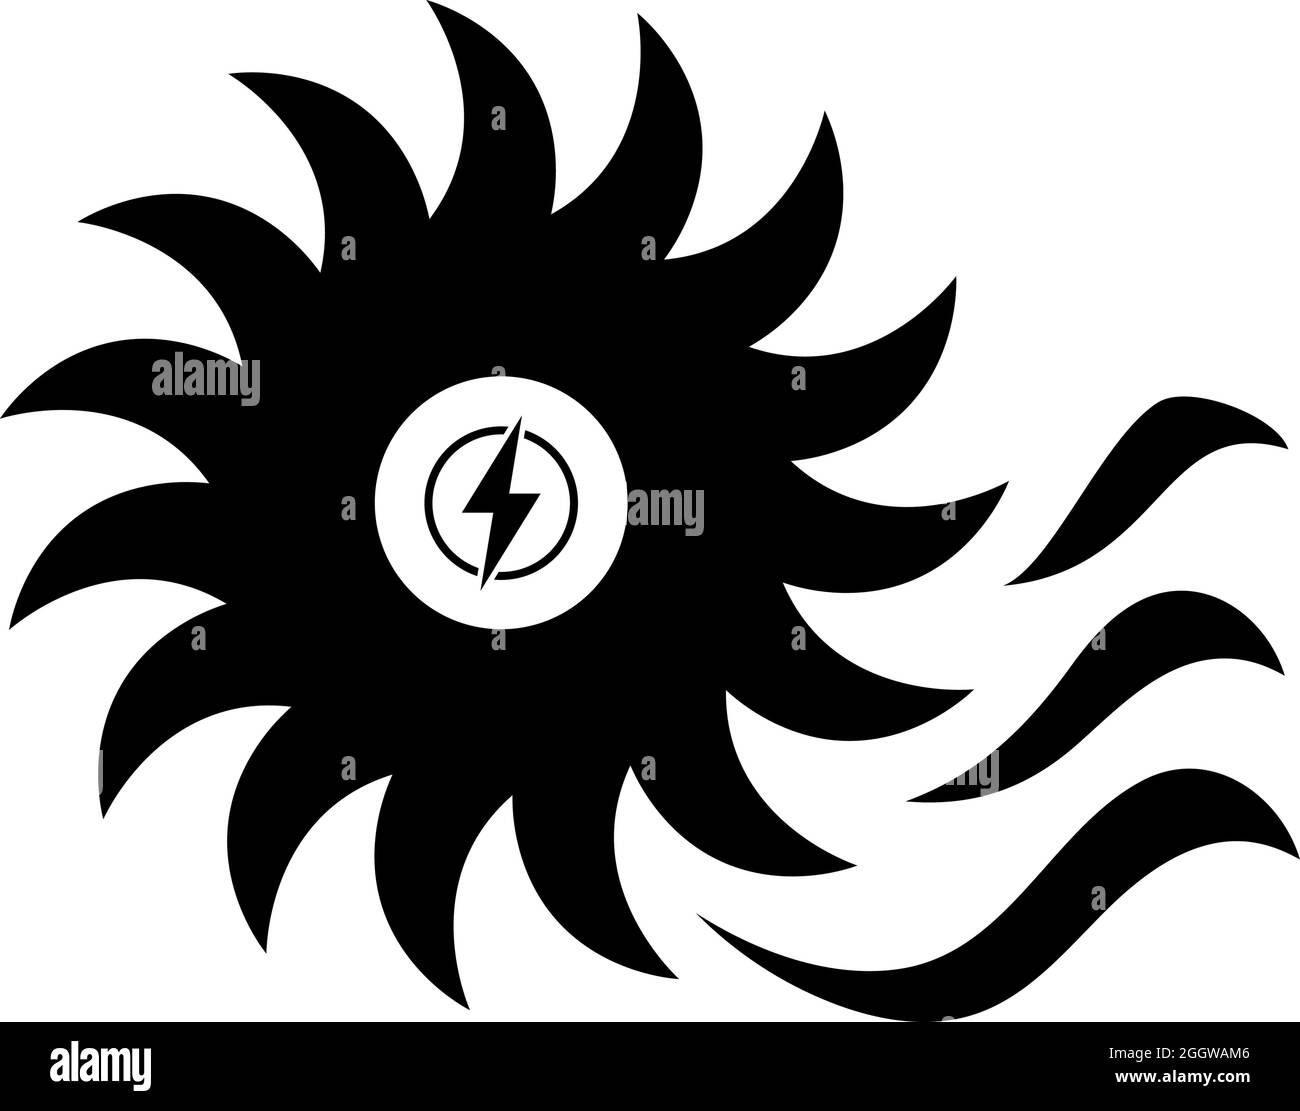 Water Turbine Icon. Black Stencil Design. Vector Illustration. Stock Vector